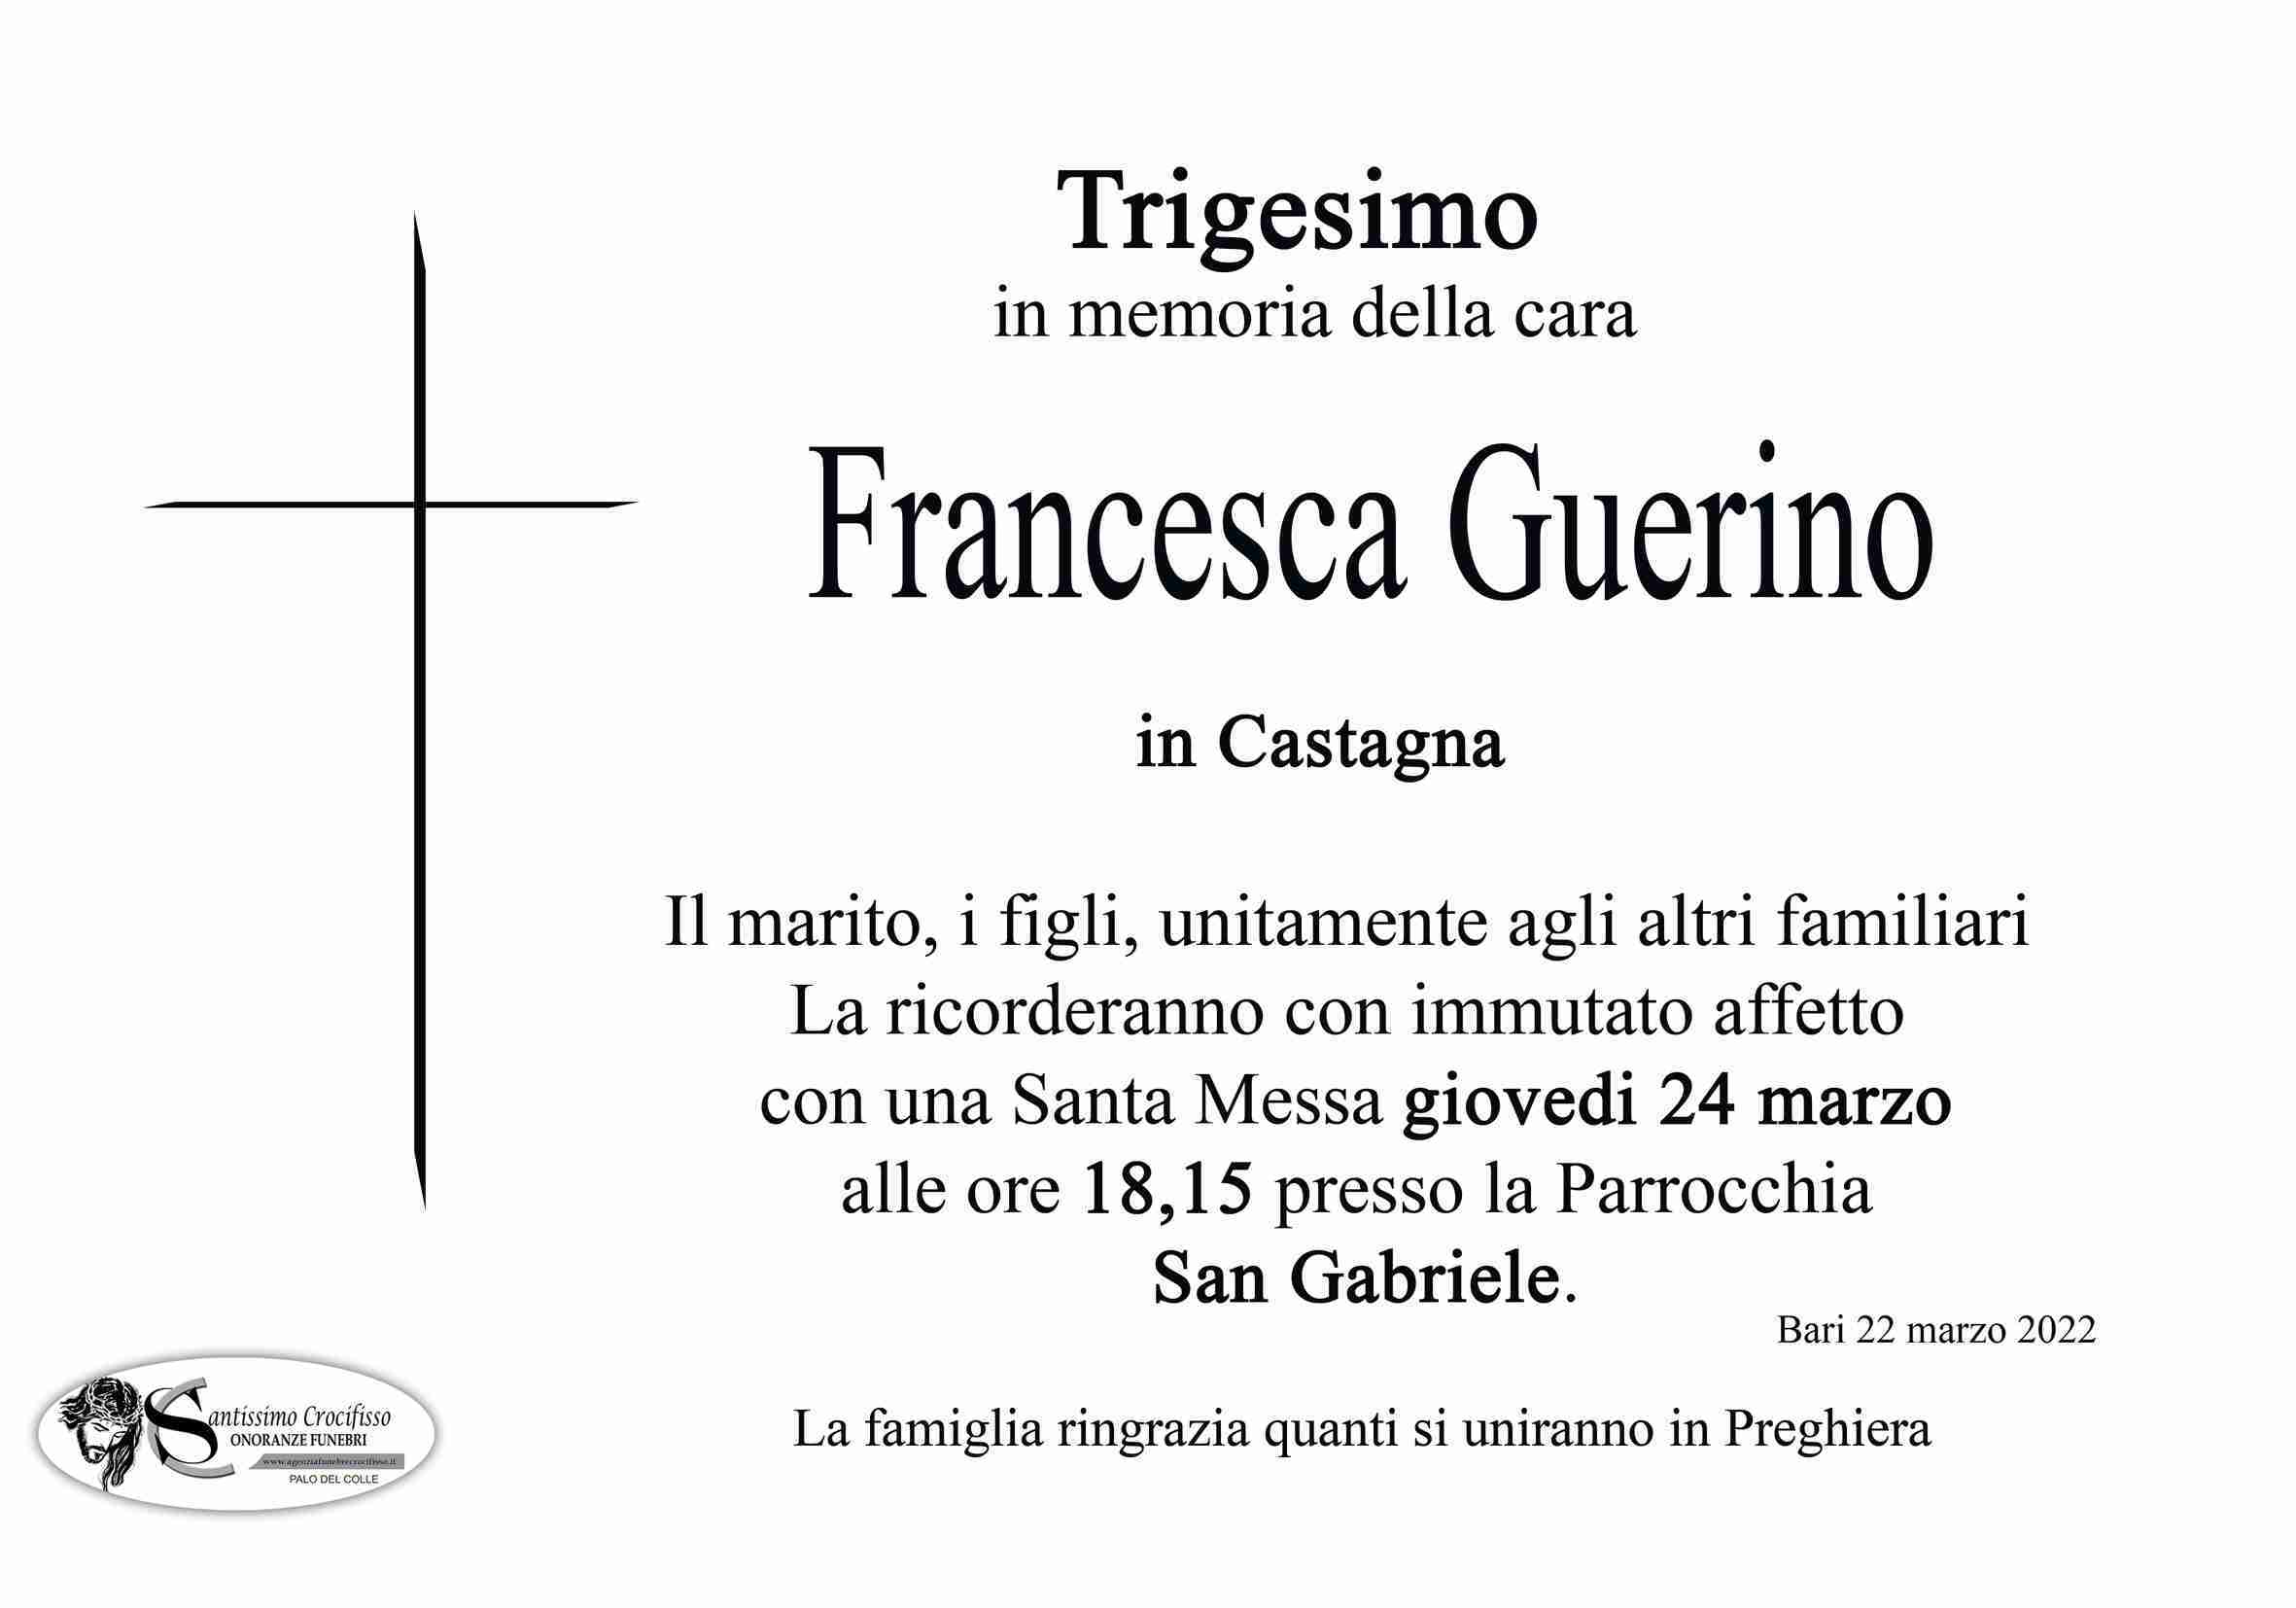 Francesca Guerino